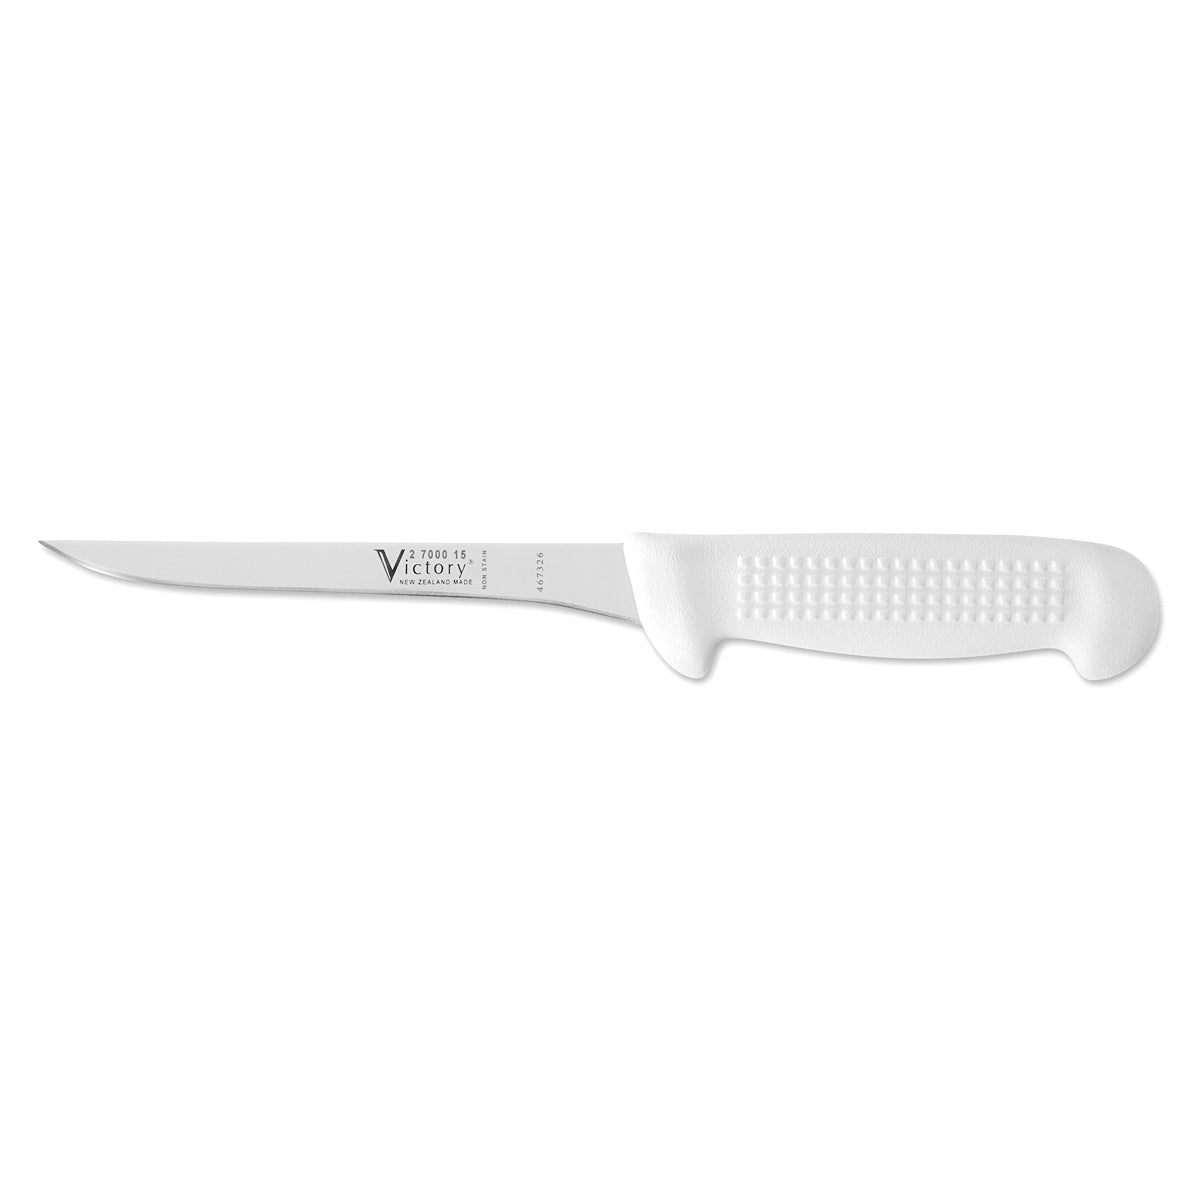 Flex straight boning knife 15cm